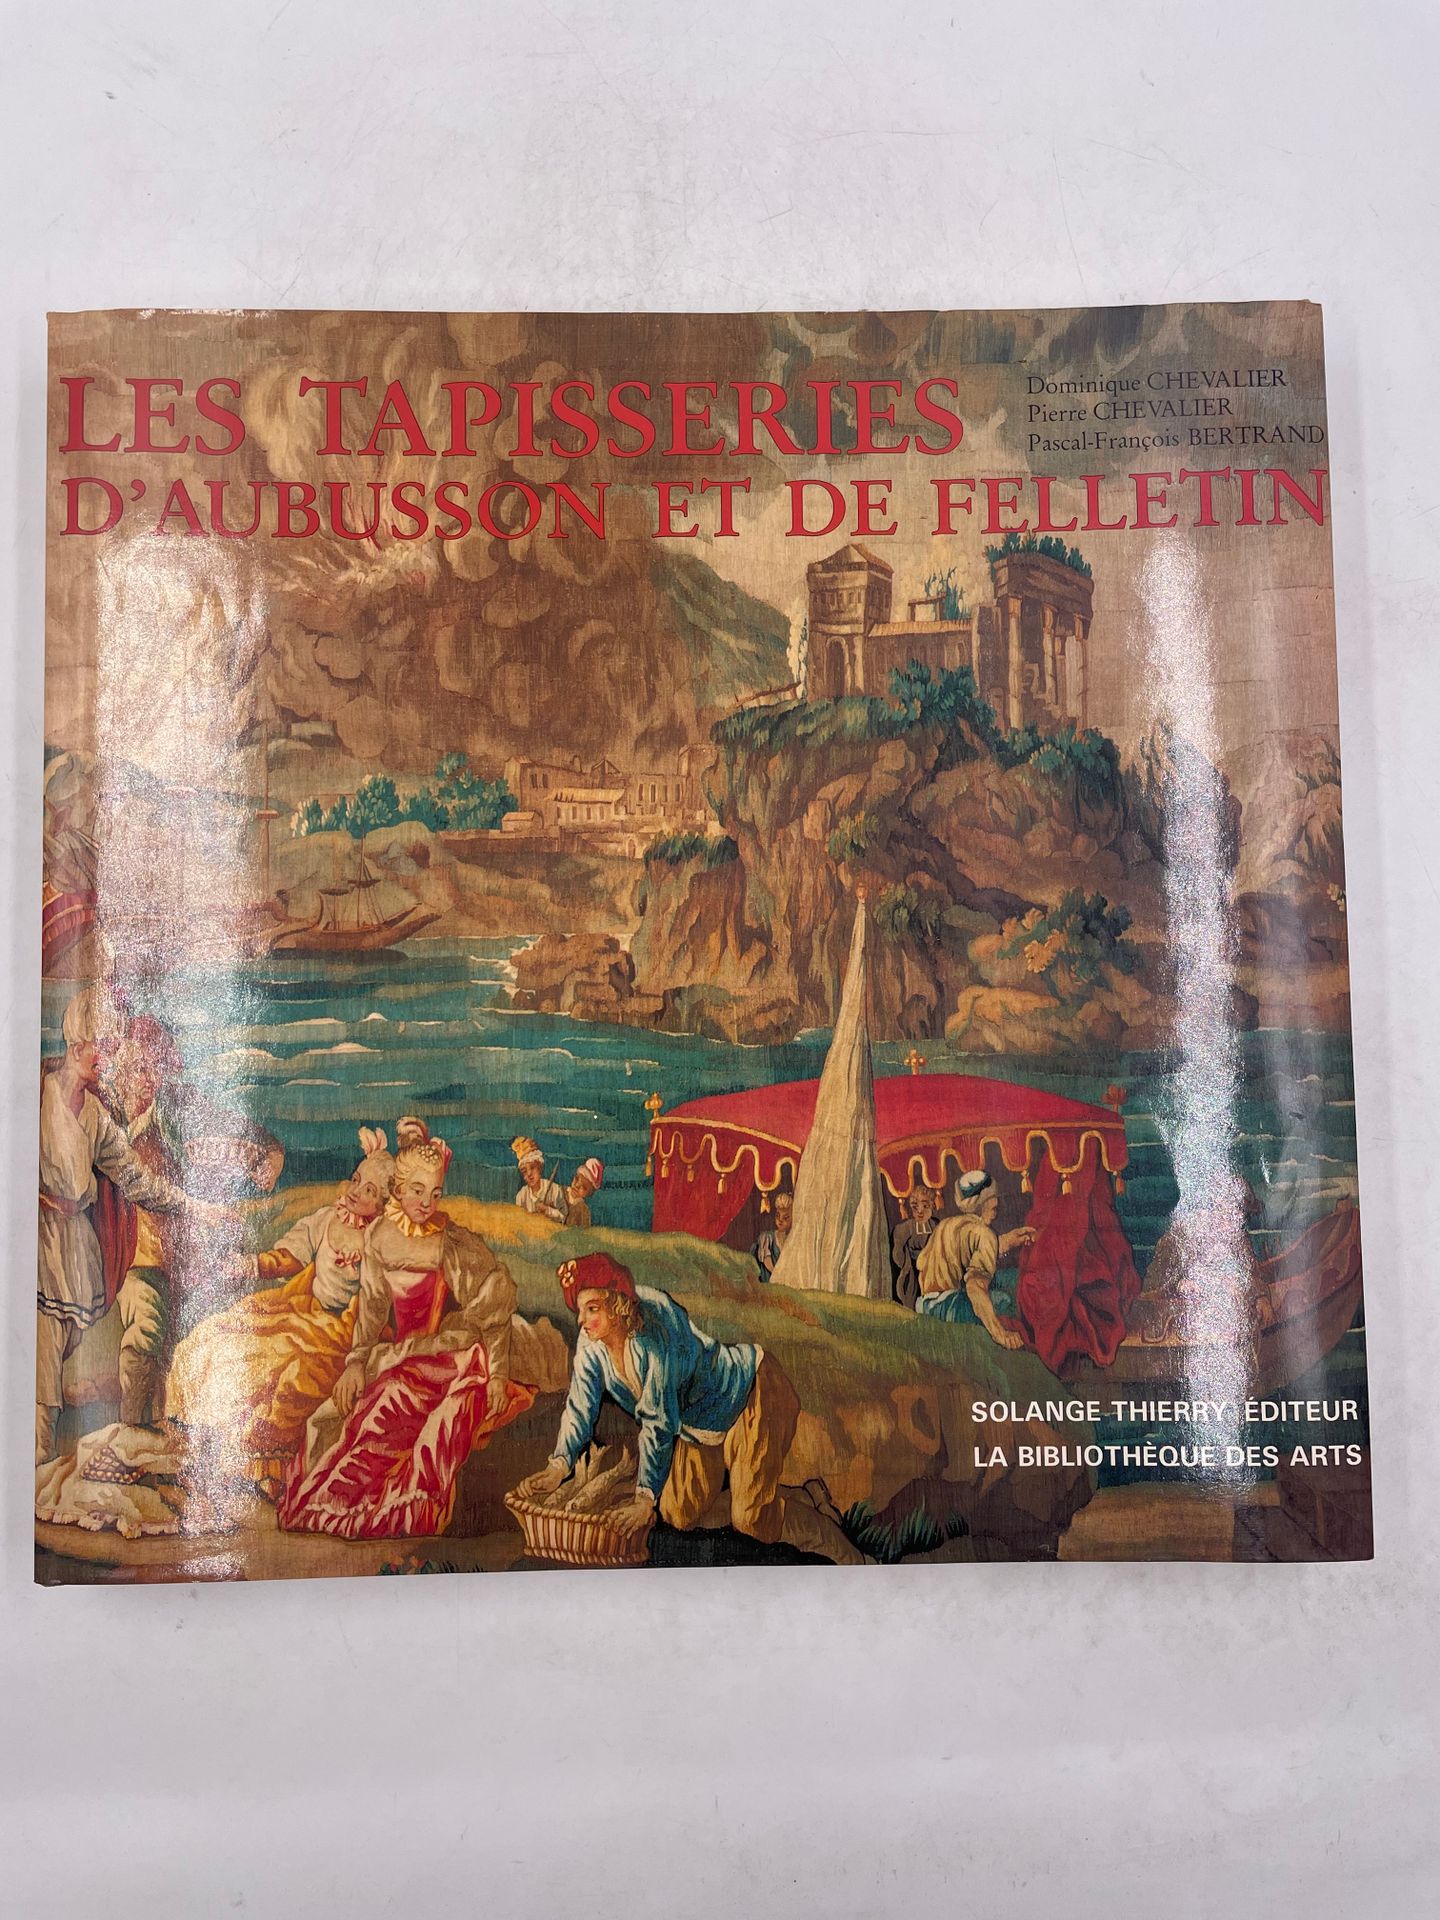 Null "Les tapisseries d'Aubusson et de Felletin", Dominique Chevalier, Pierre Ch&hellip;